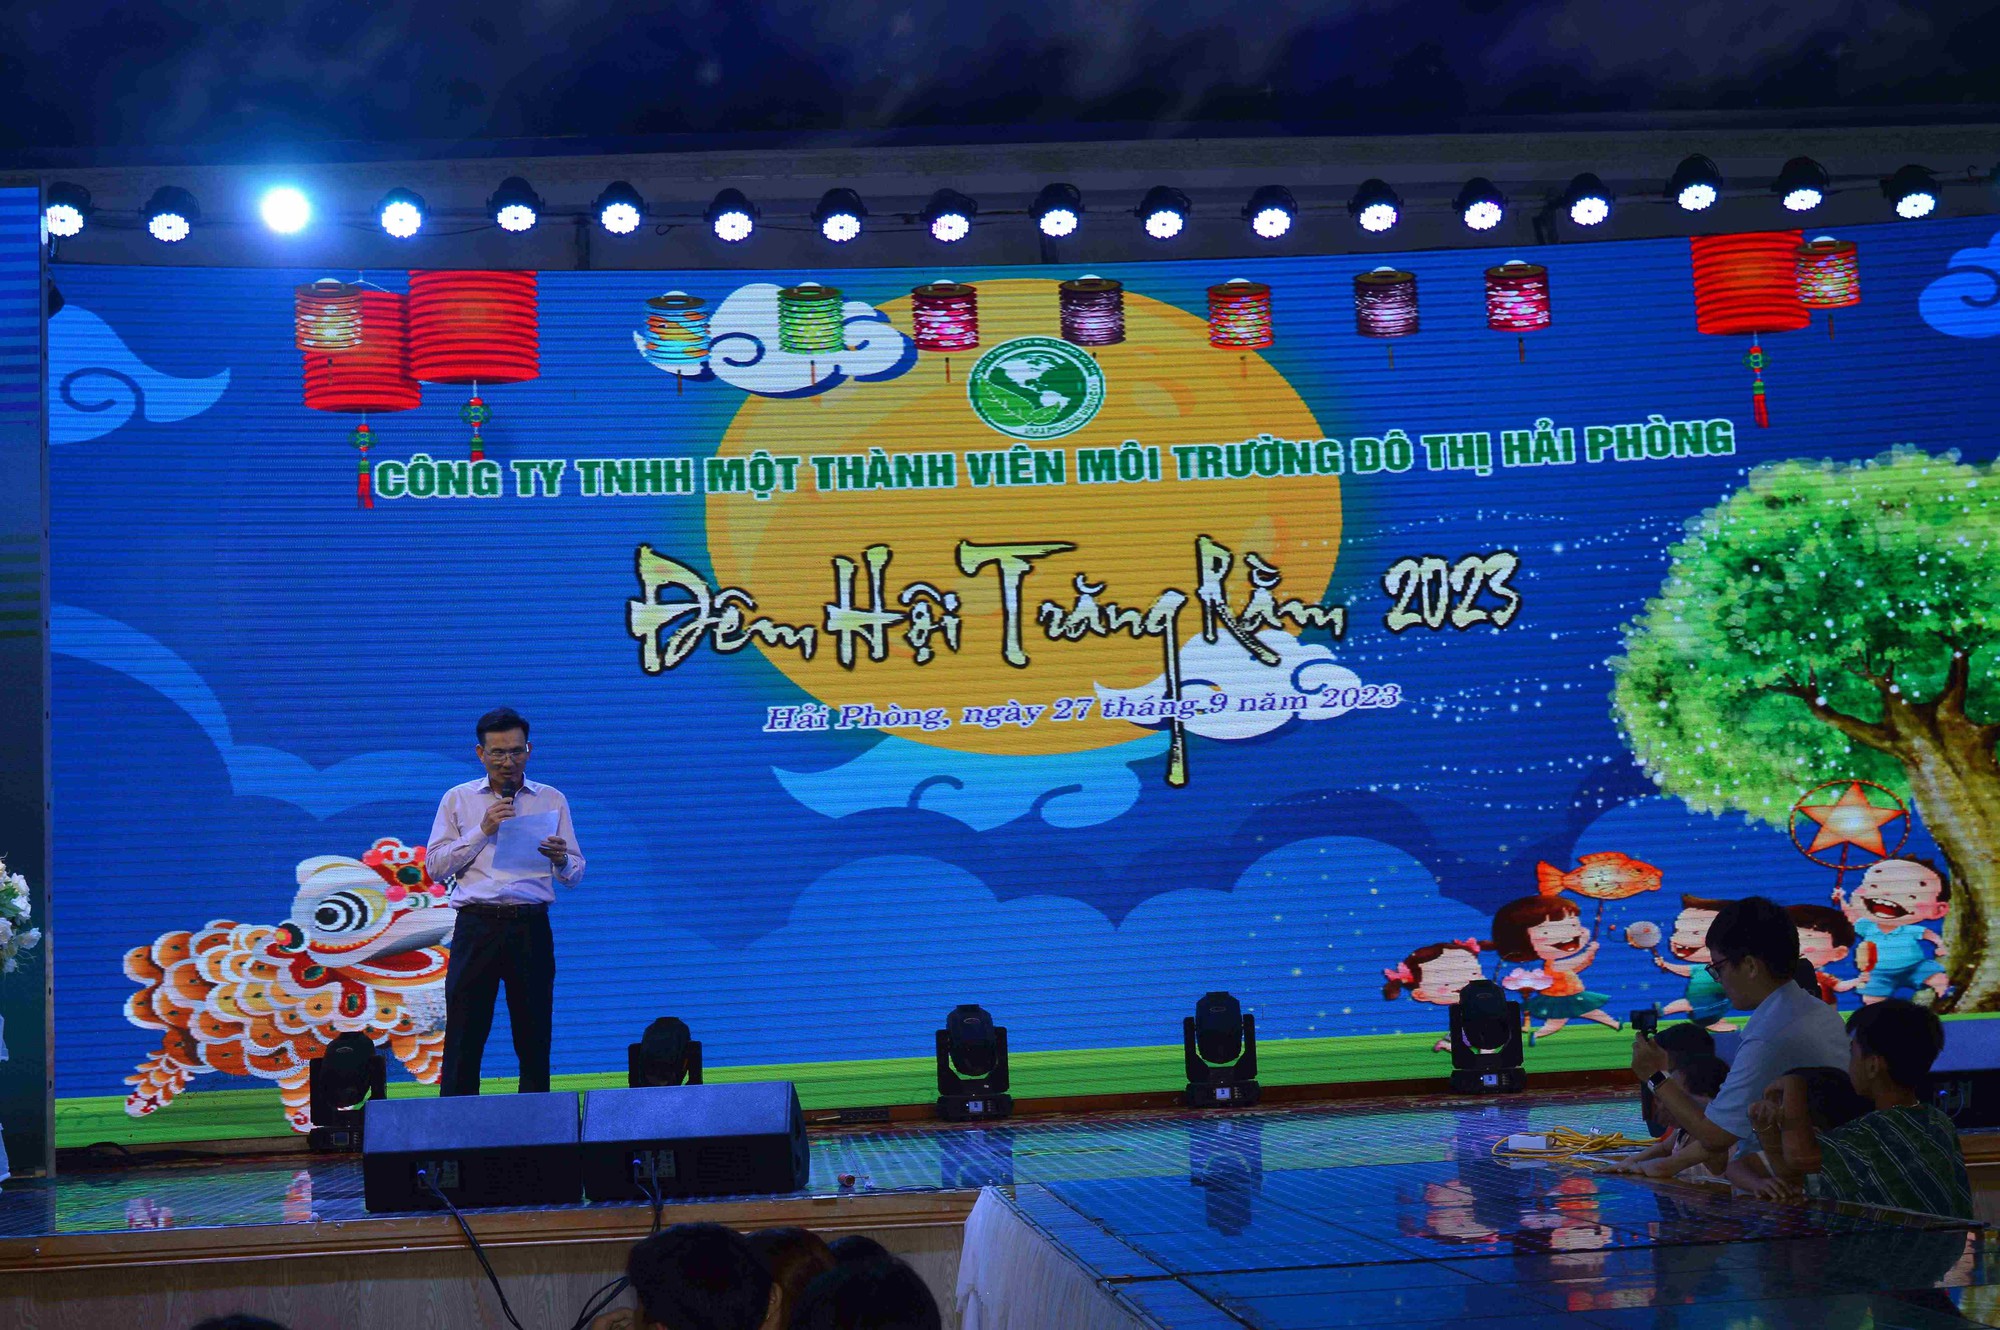 Công ty TNHH MTV môi trường đô thị Hải Phòng tổ chức vui Tết Trung thu cho hơn 900 em nhỏ - Ảnh 1.